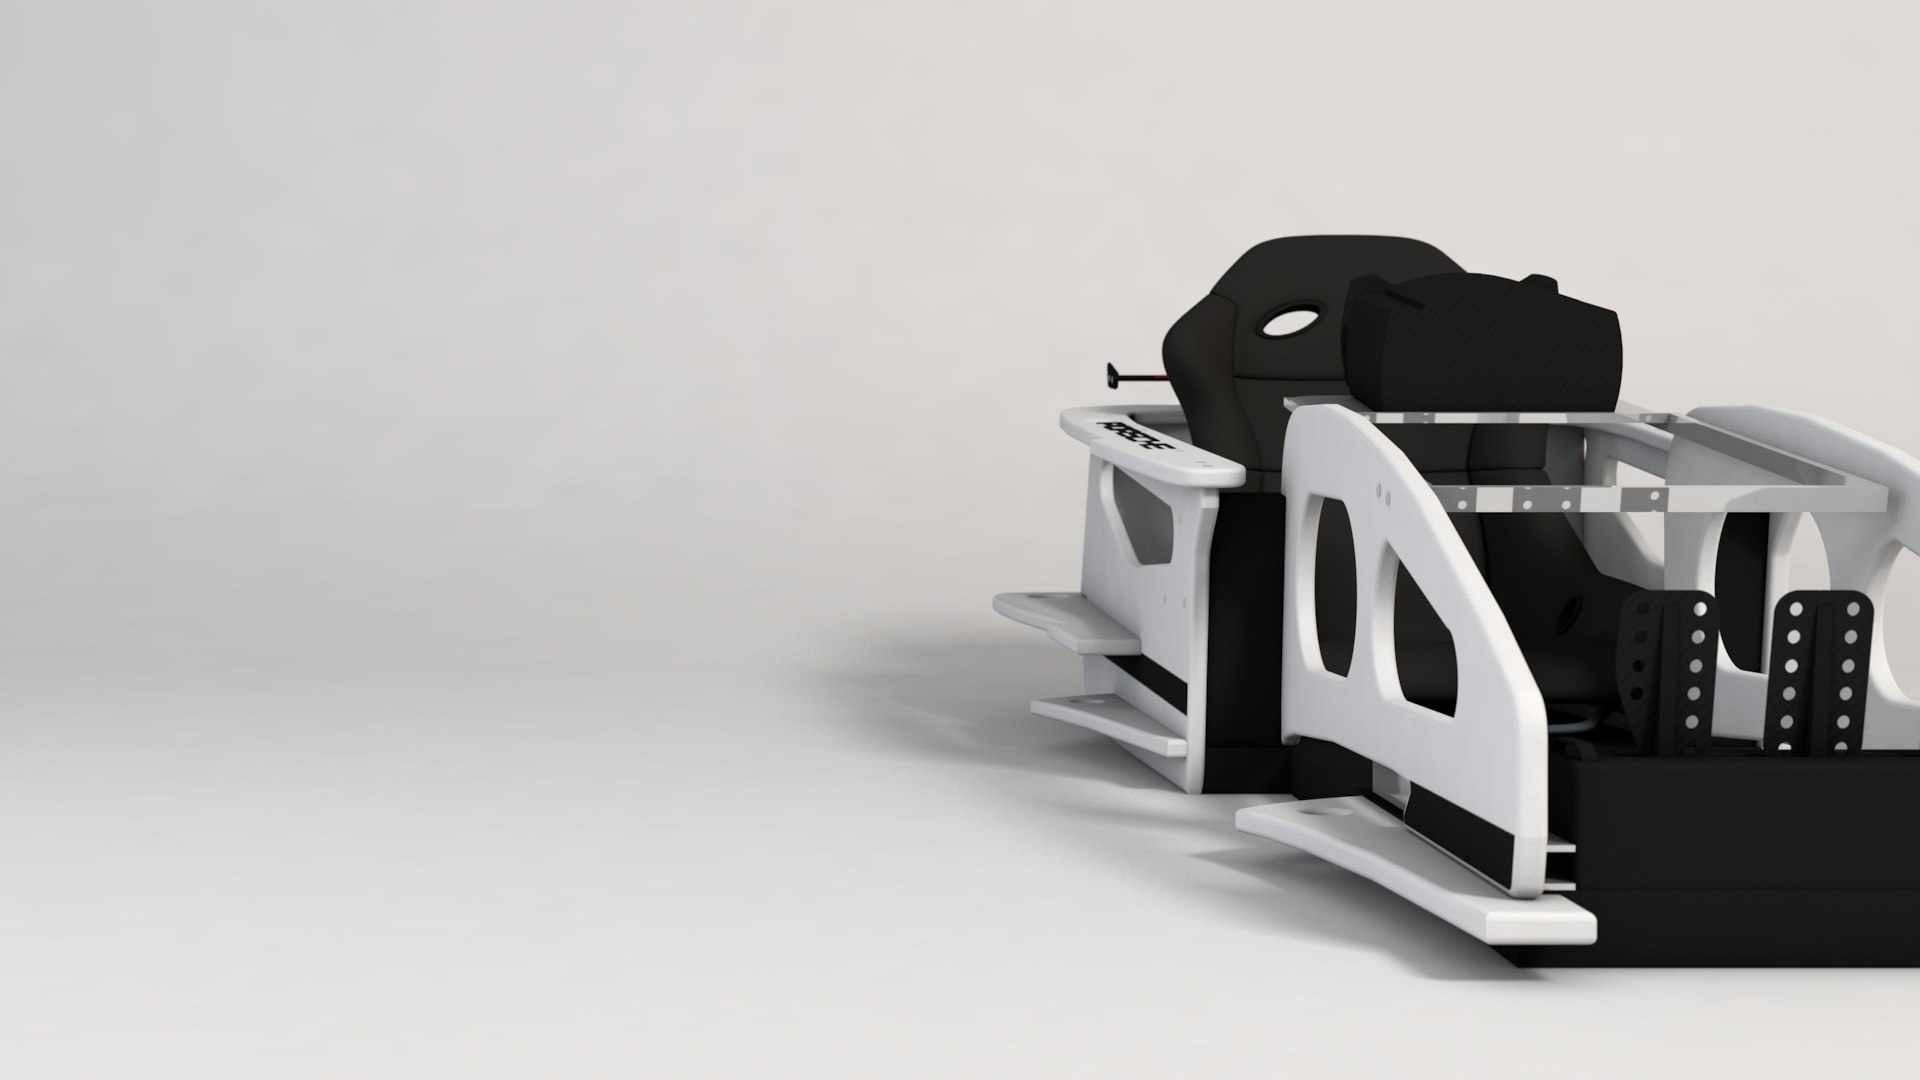 Race Simulator 3D Model - TurboSquid 1444241